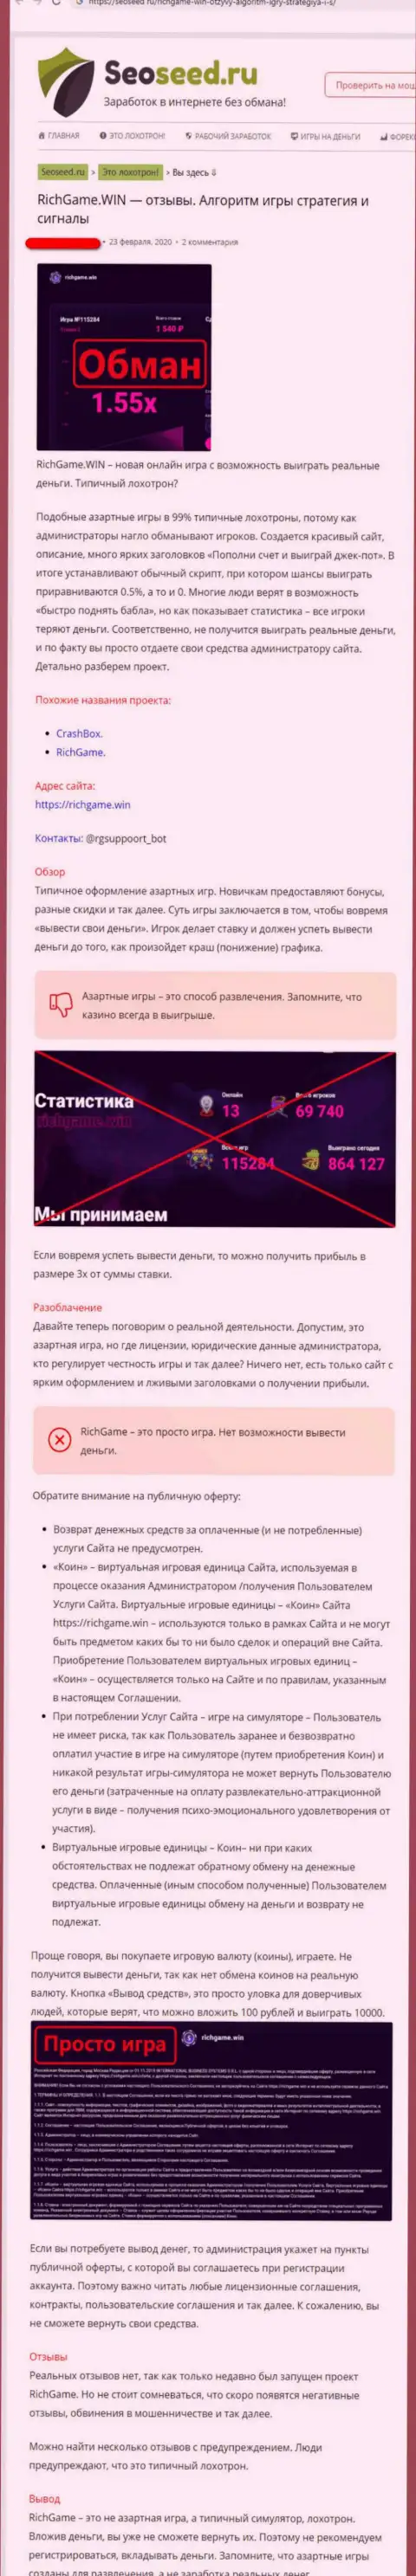 Обзор деяний и комментарии о организации RichGame Win - это МОШЕННИКИ !!!